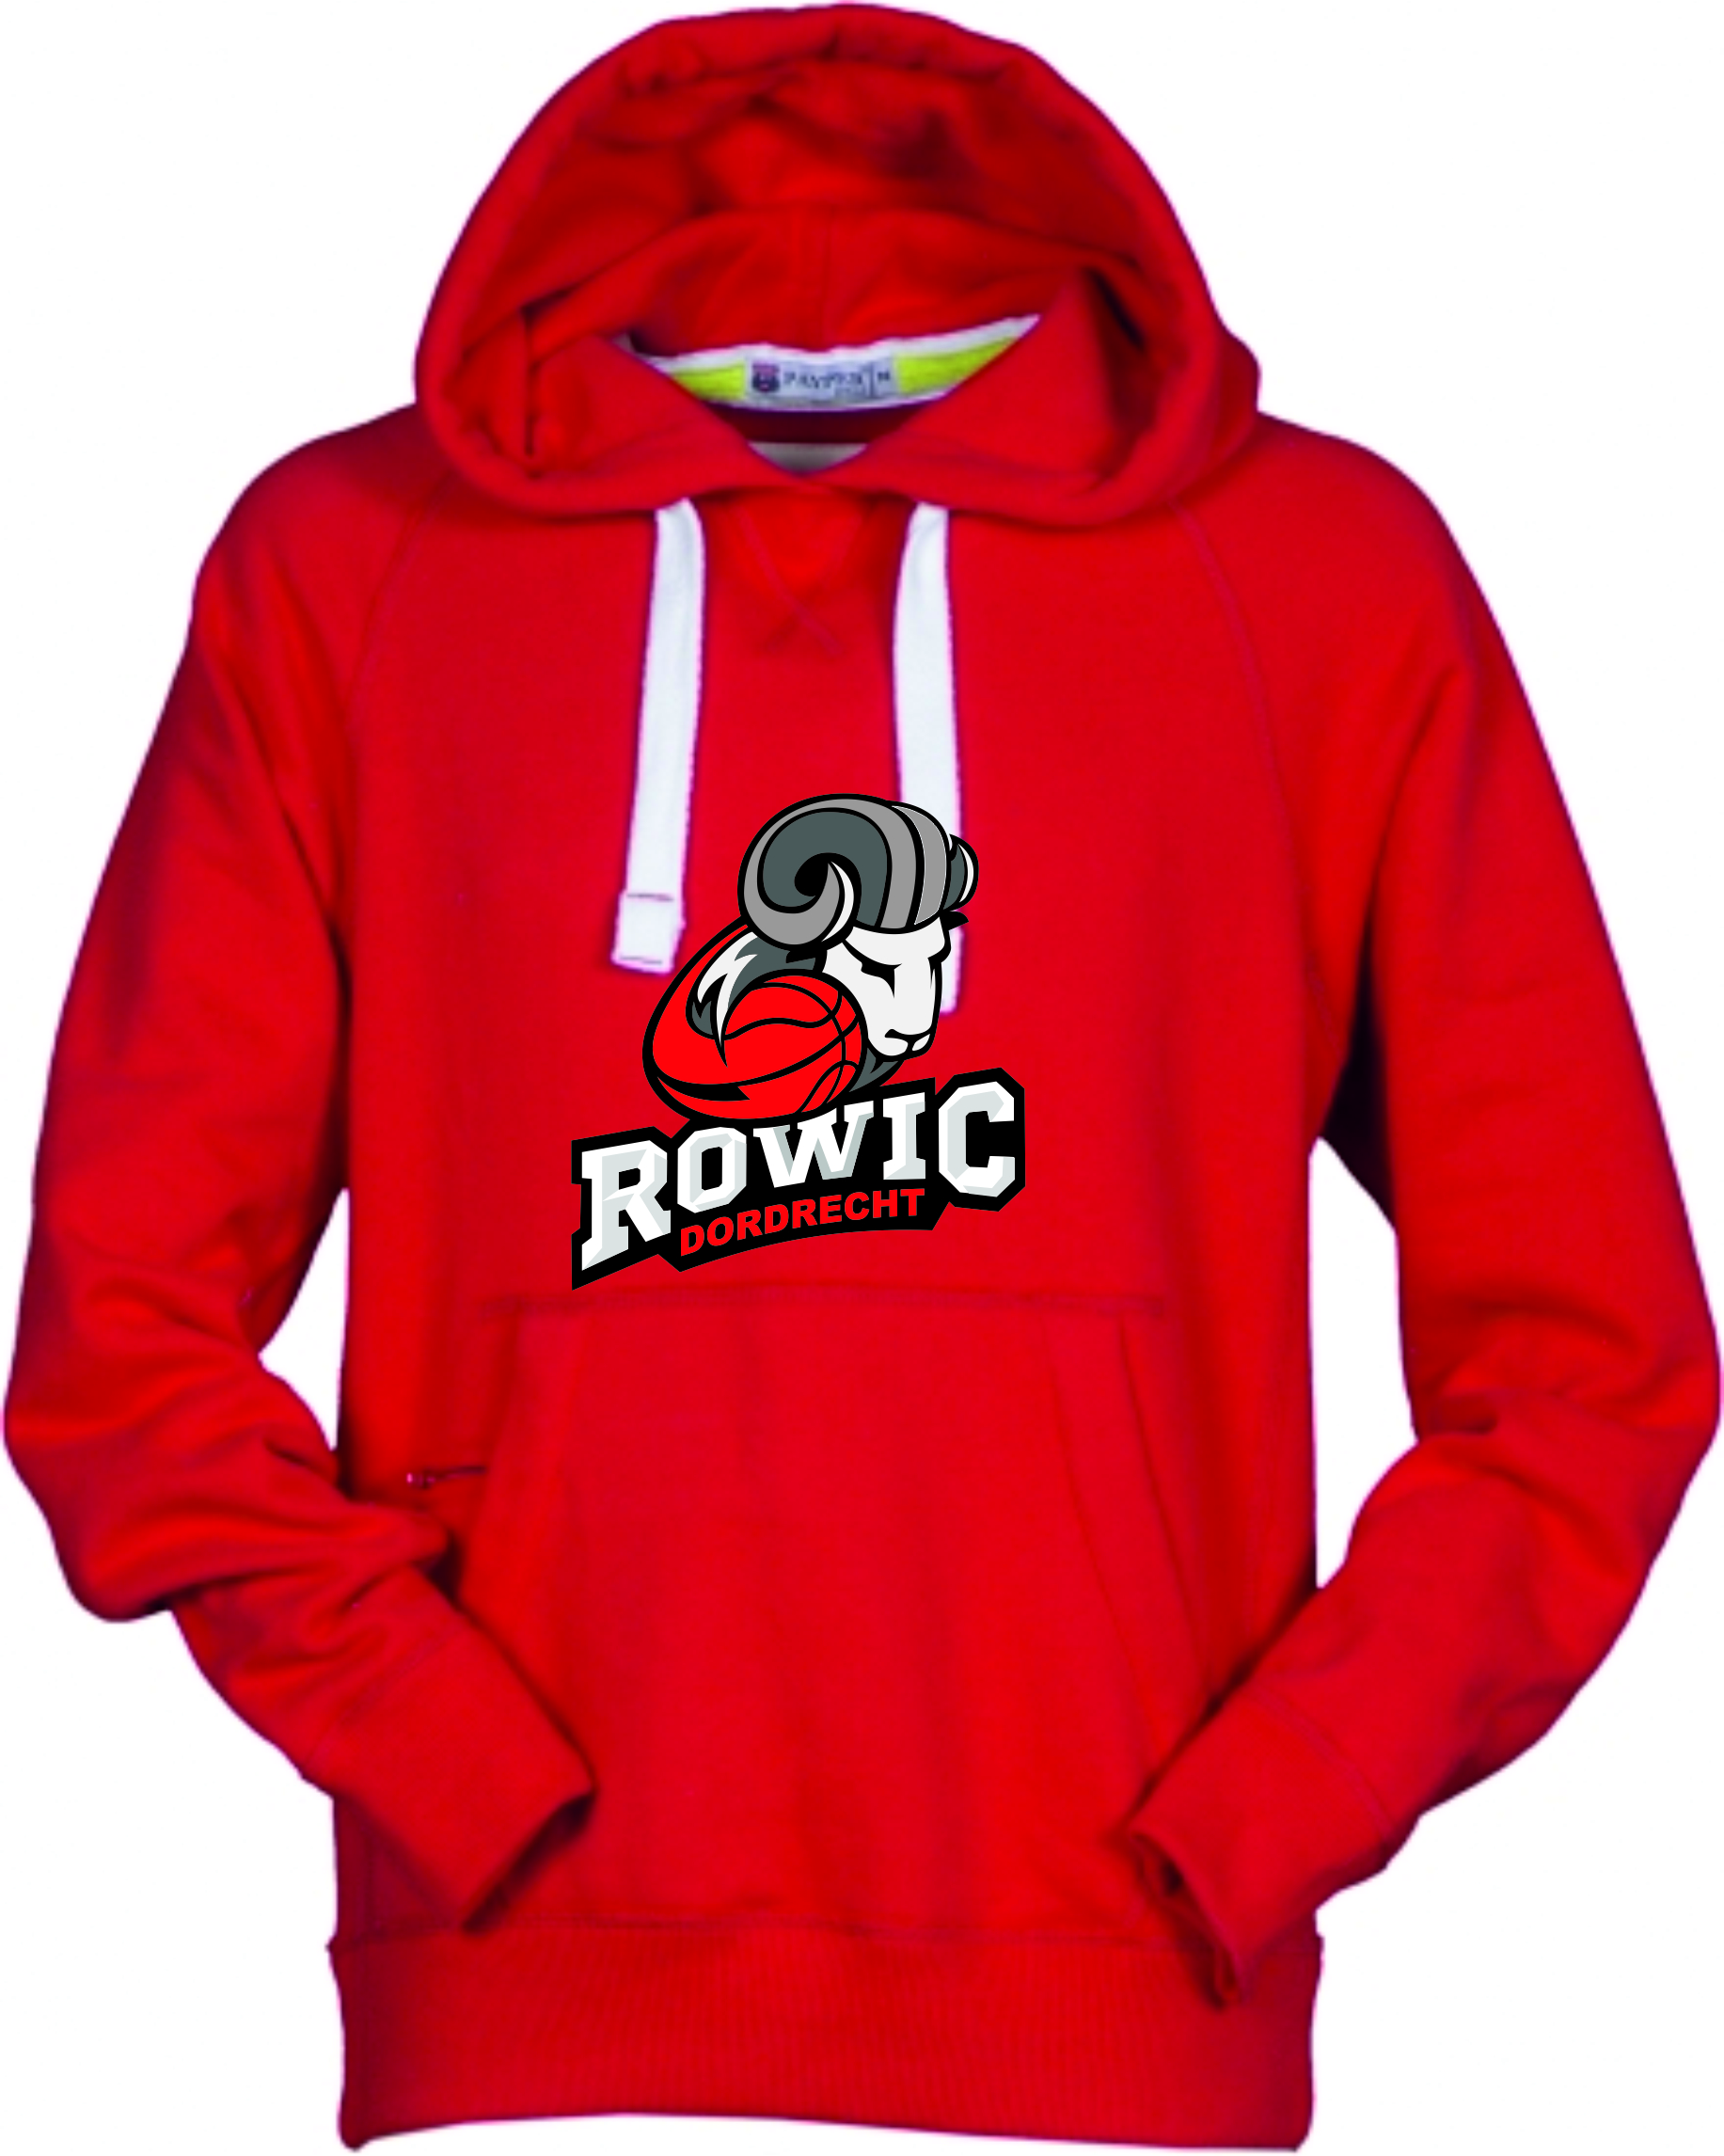 Rowic Urban sweater